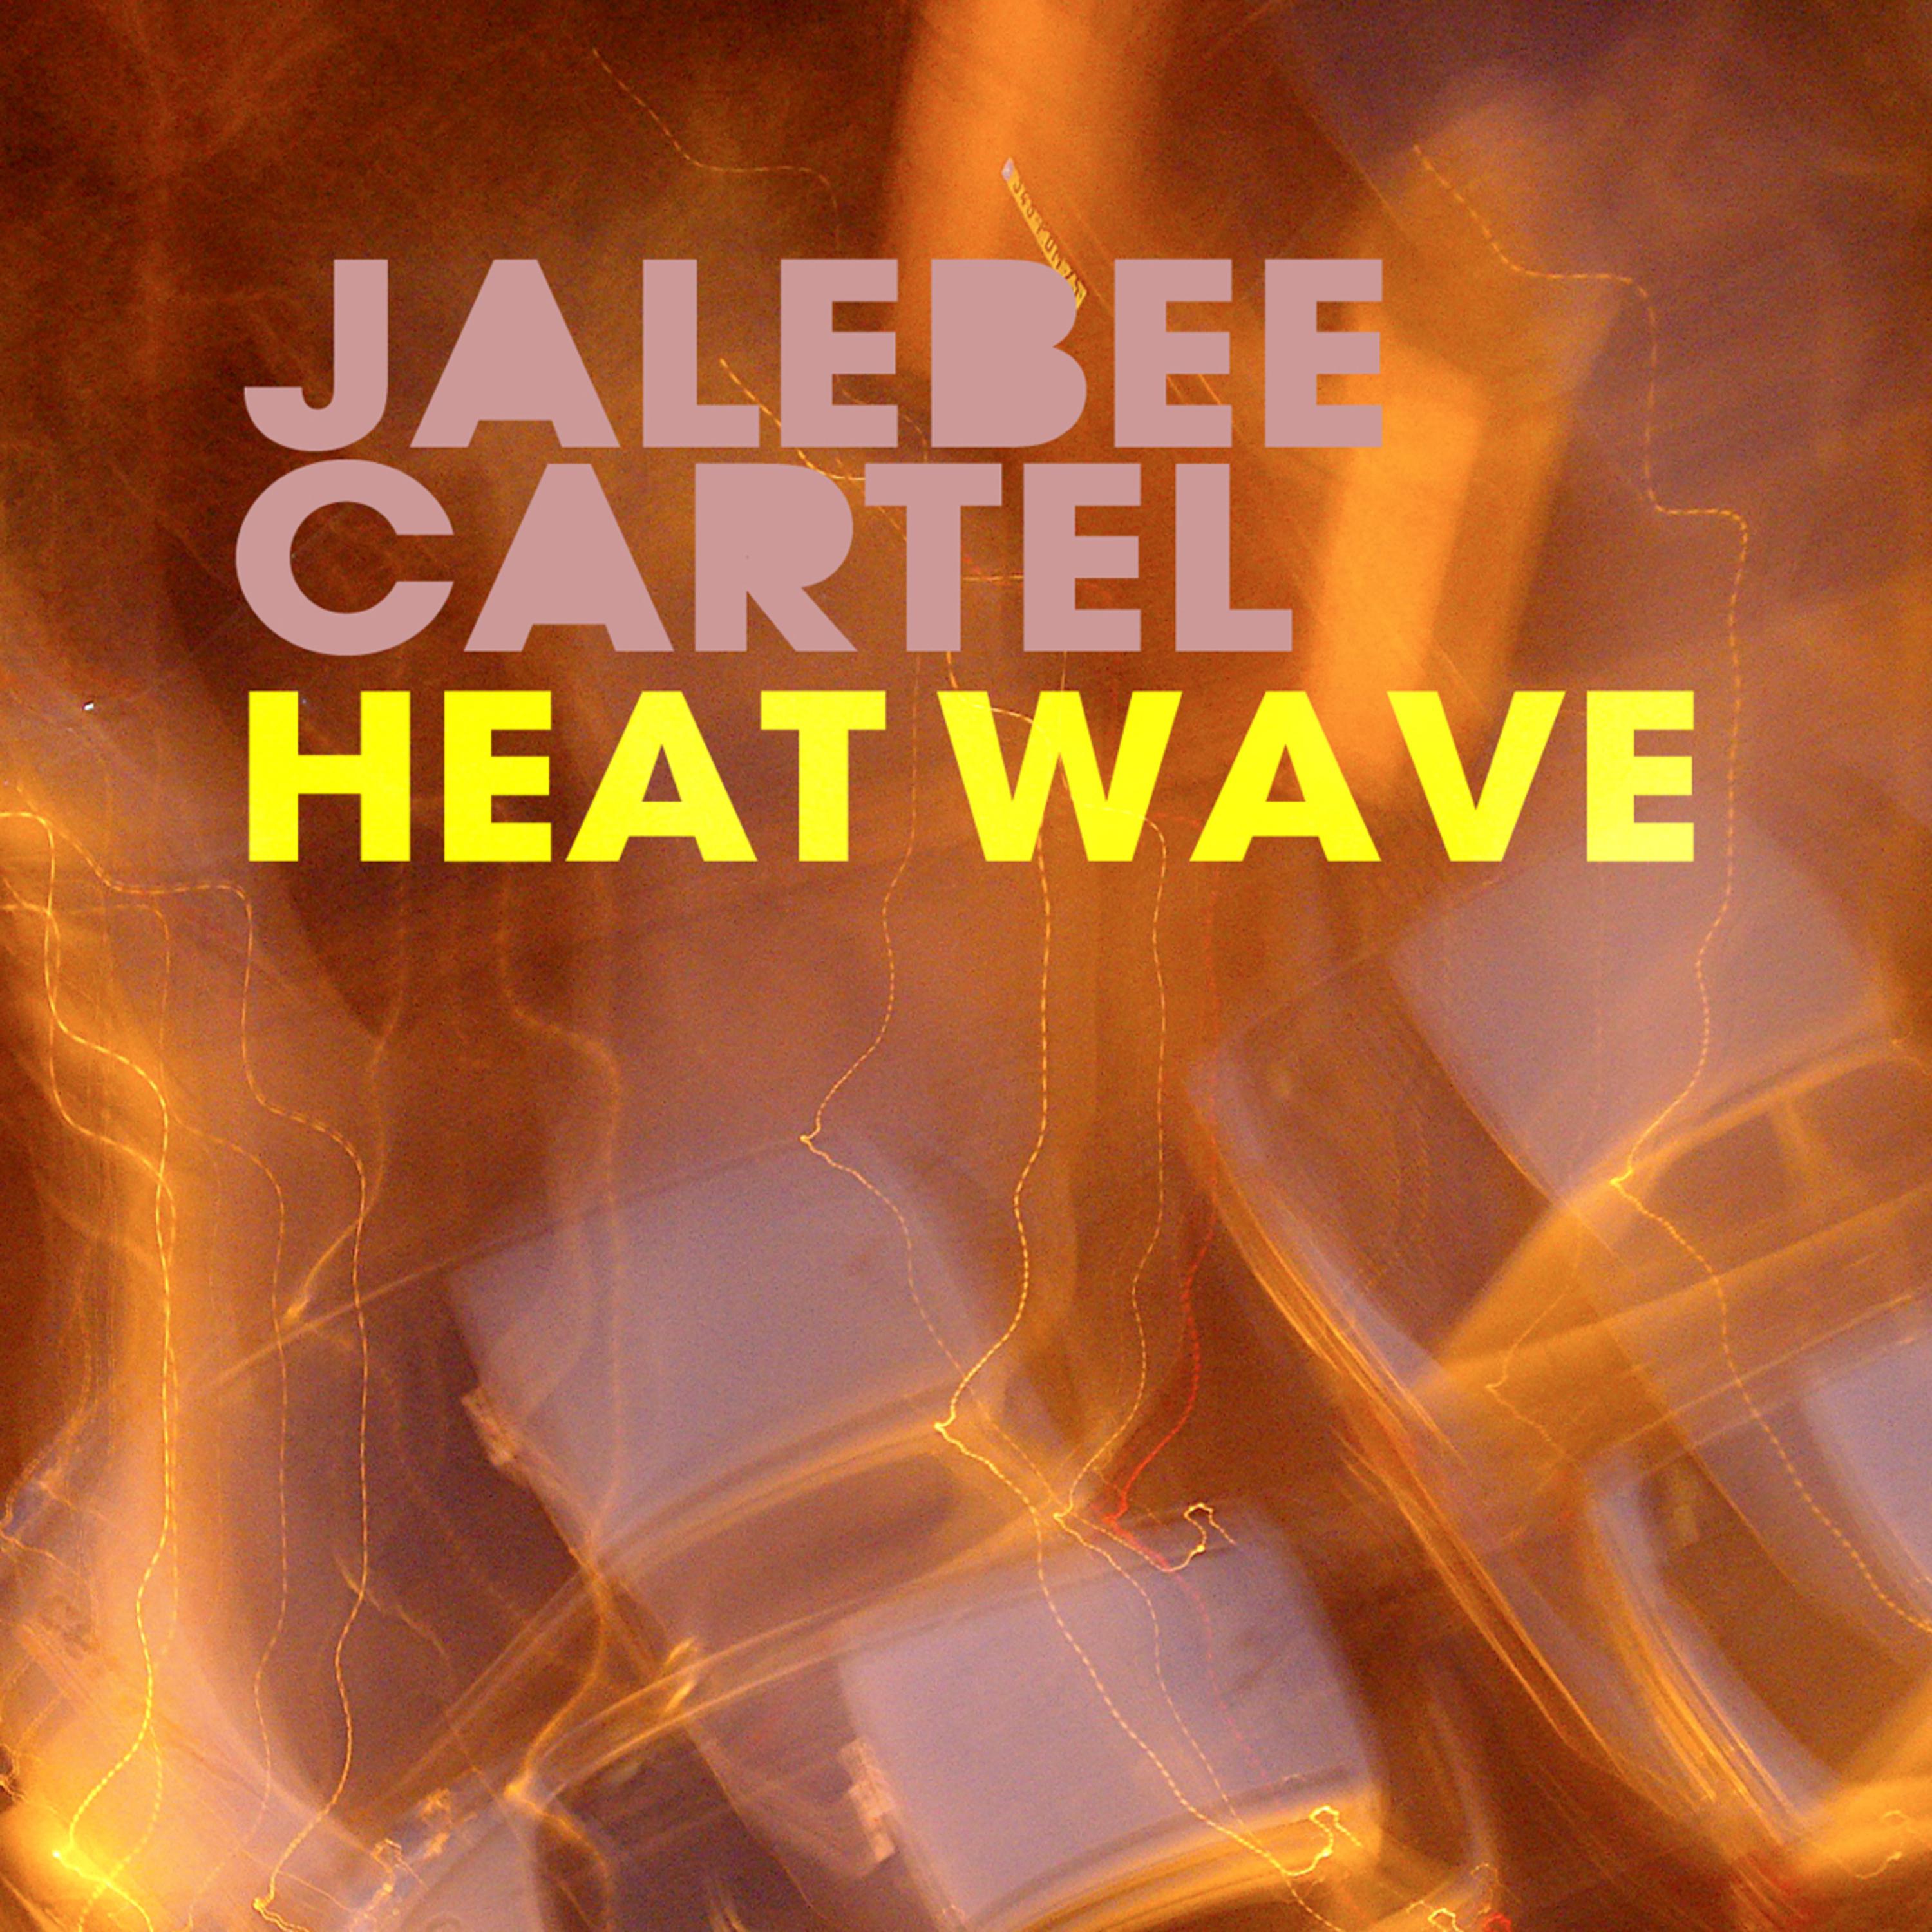 Heat Wave (Pete Nouveau Remix)